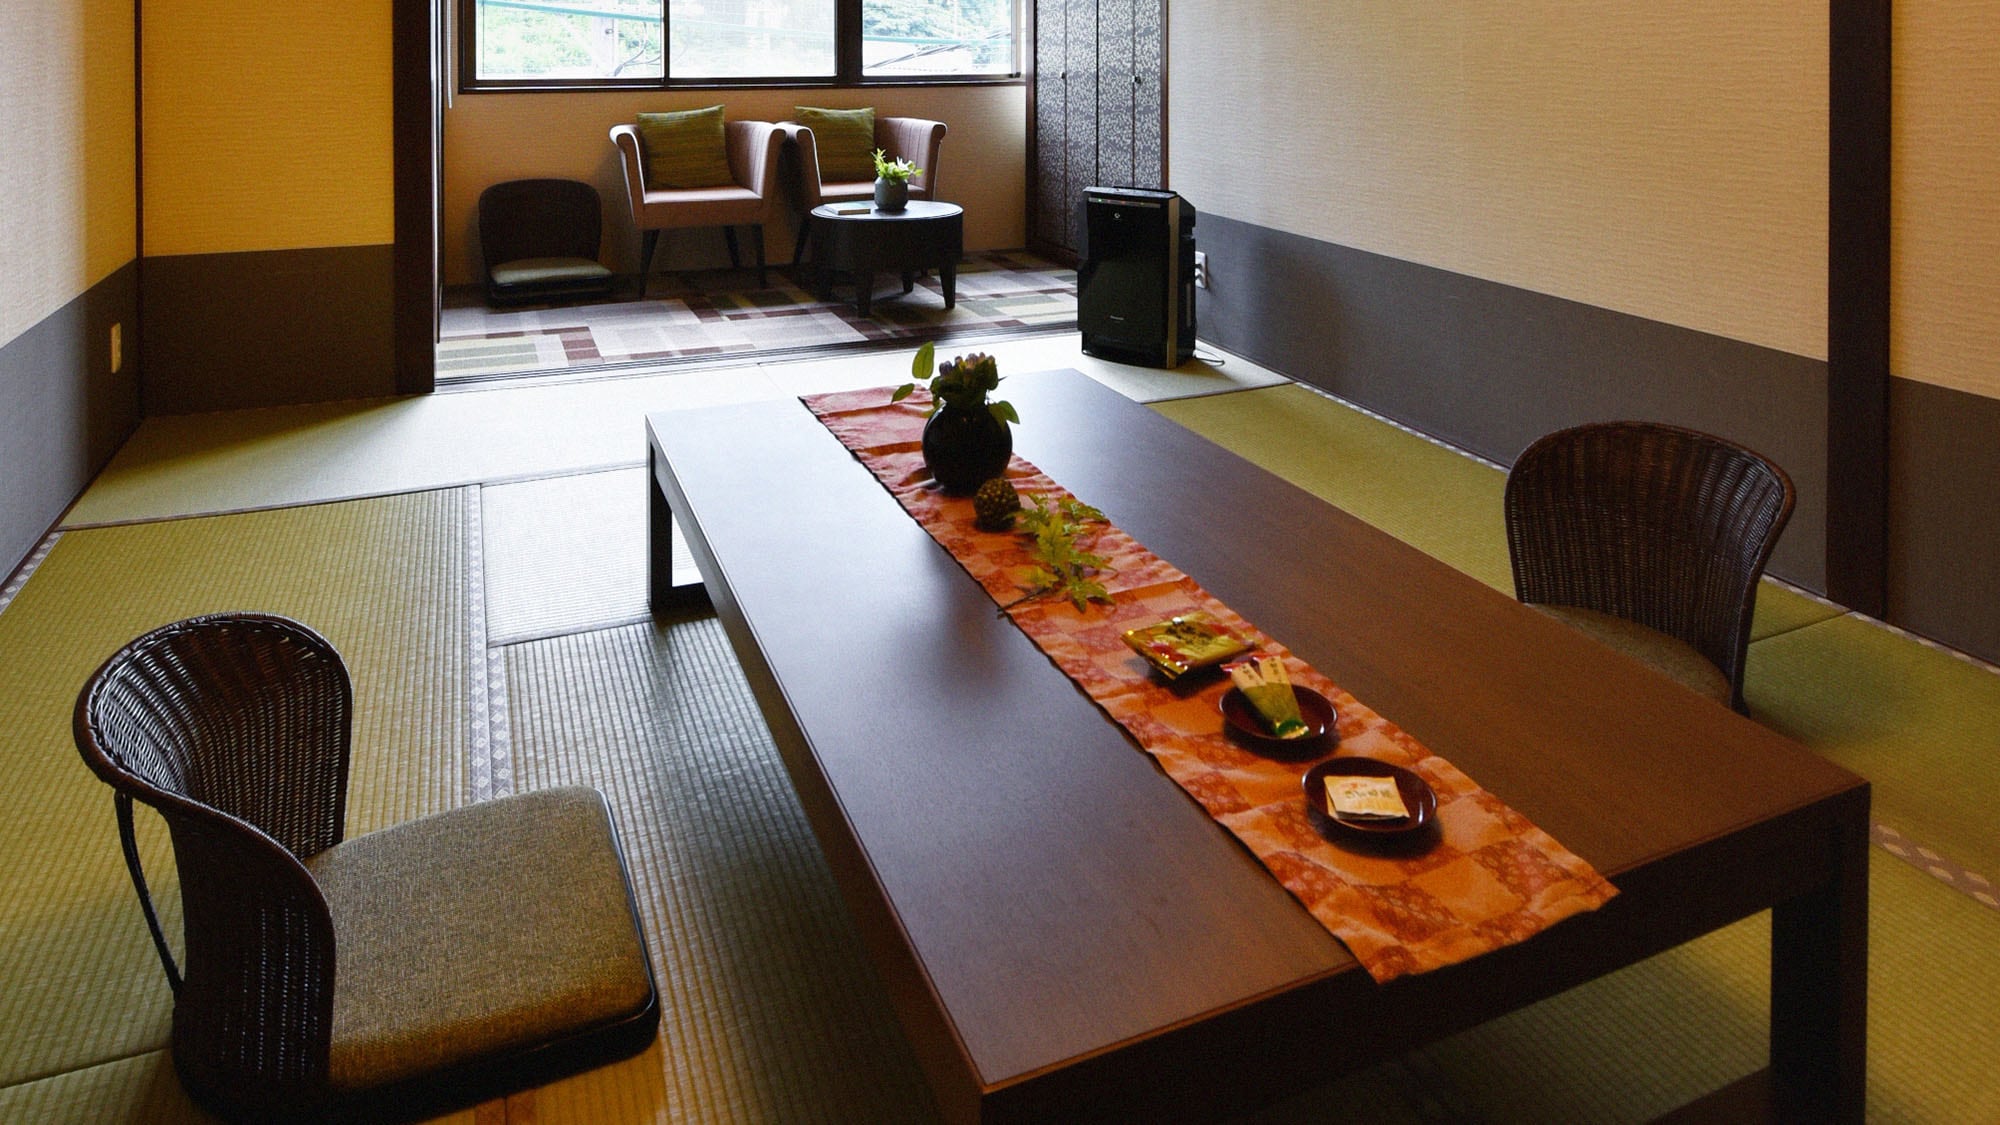 ・【일반 객실 일례】 일본식 객실 8~12 다다미의 방입니다. 화려한 장식을 배제한 심플한 인테리어